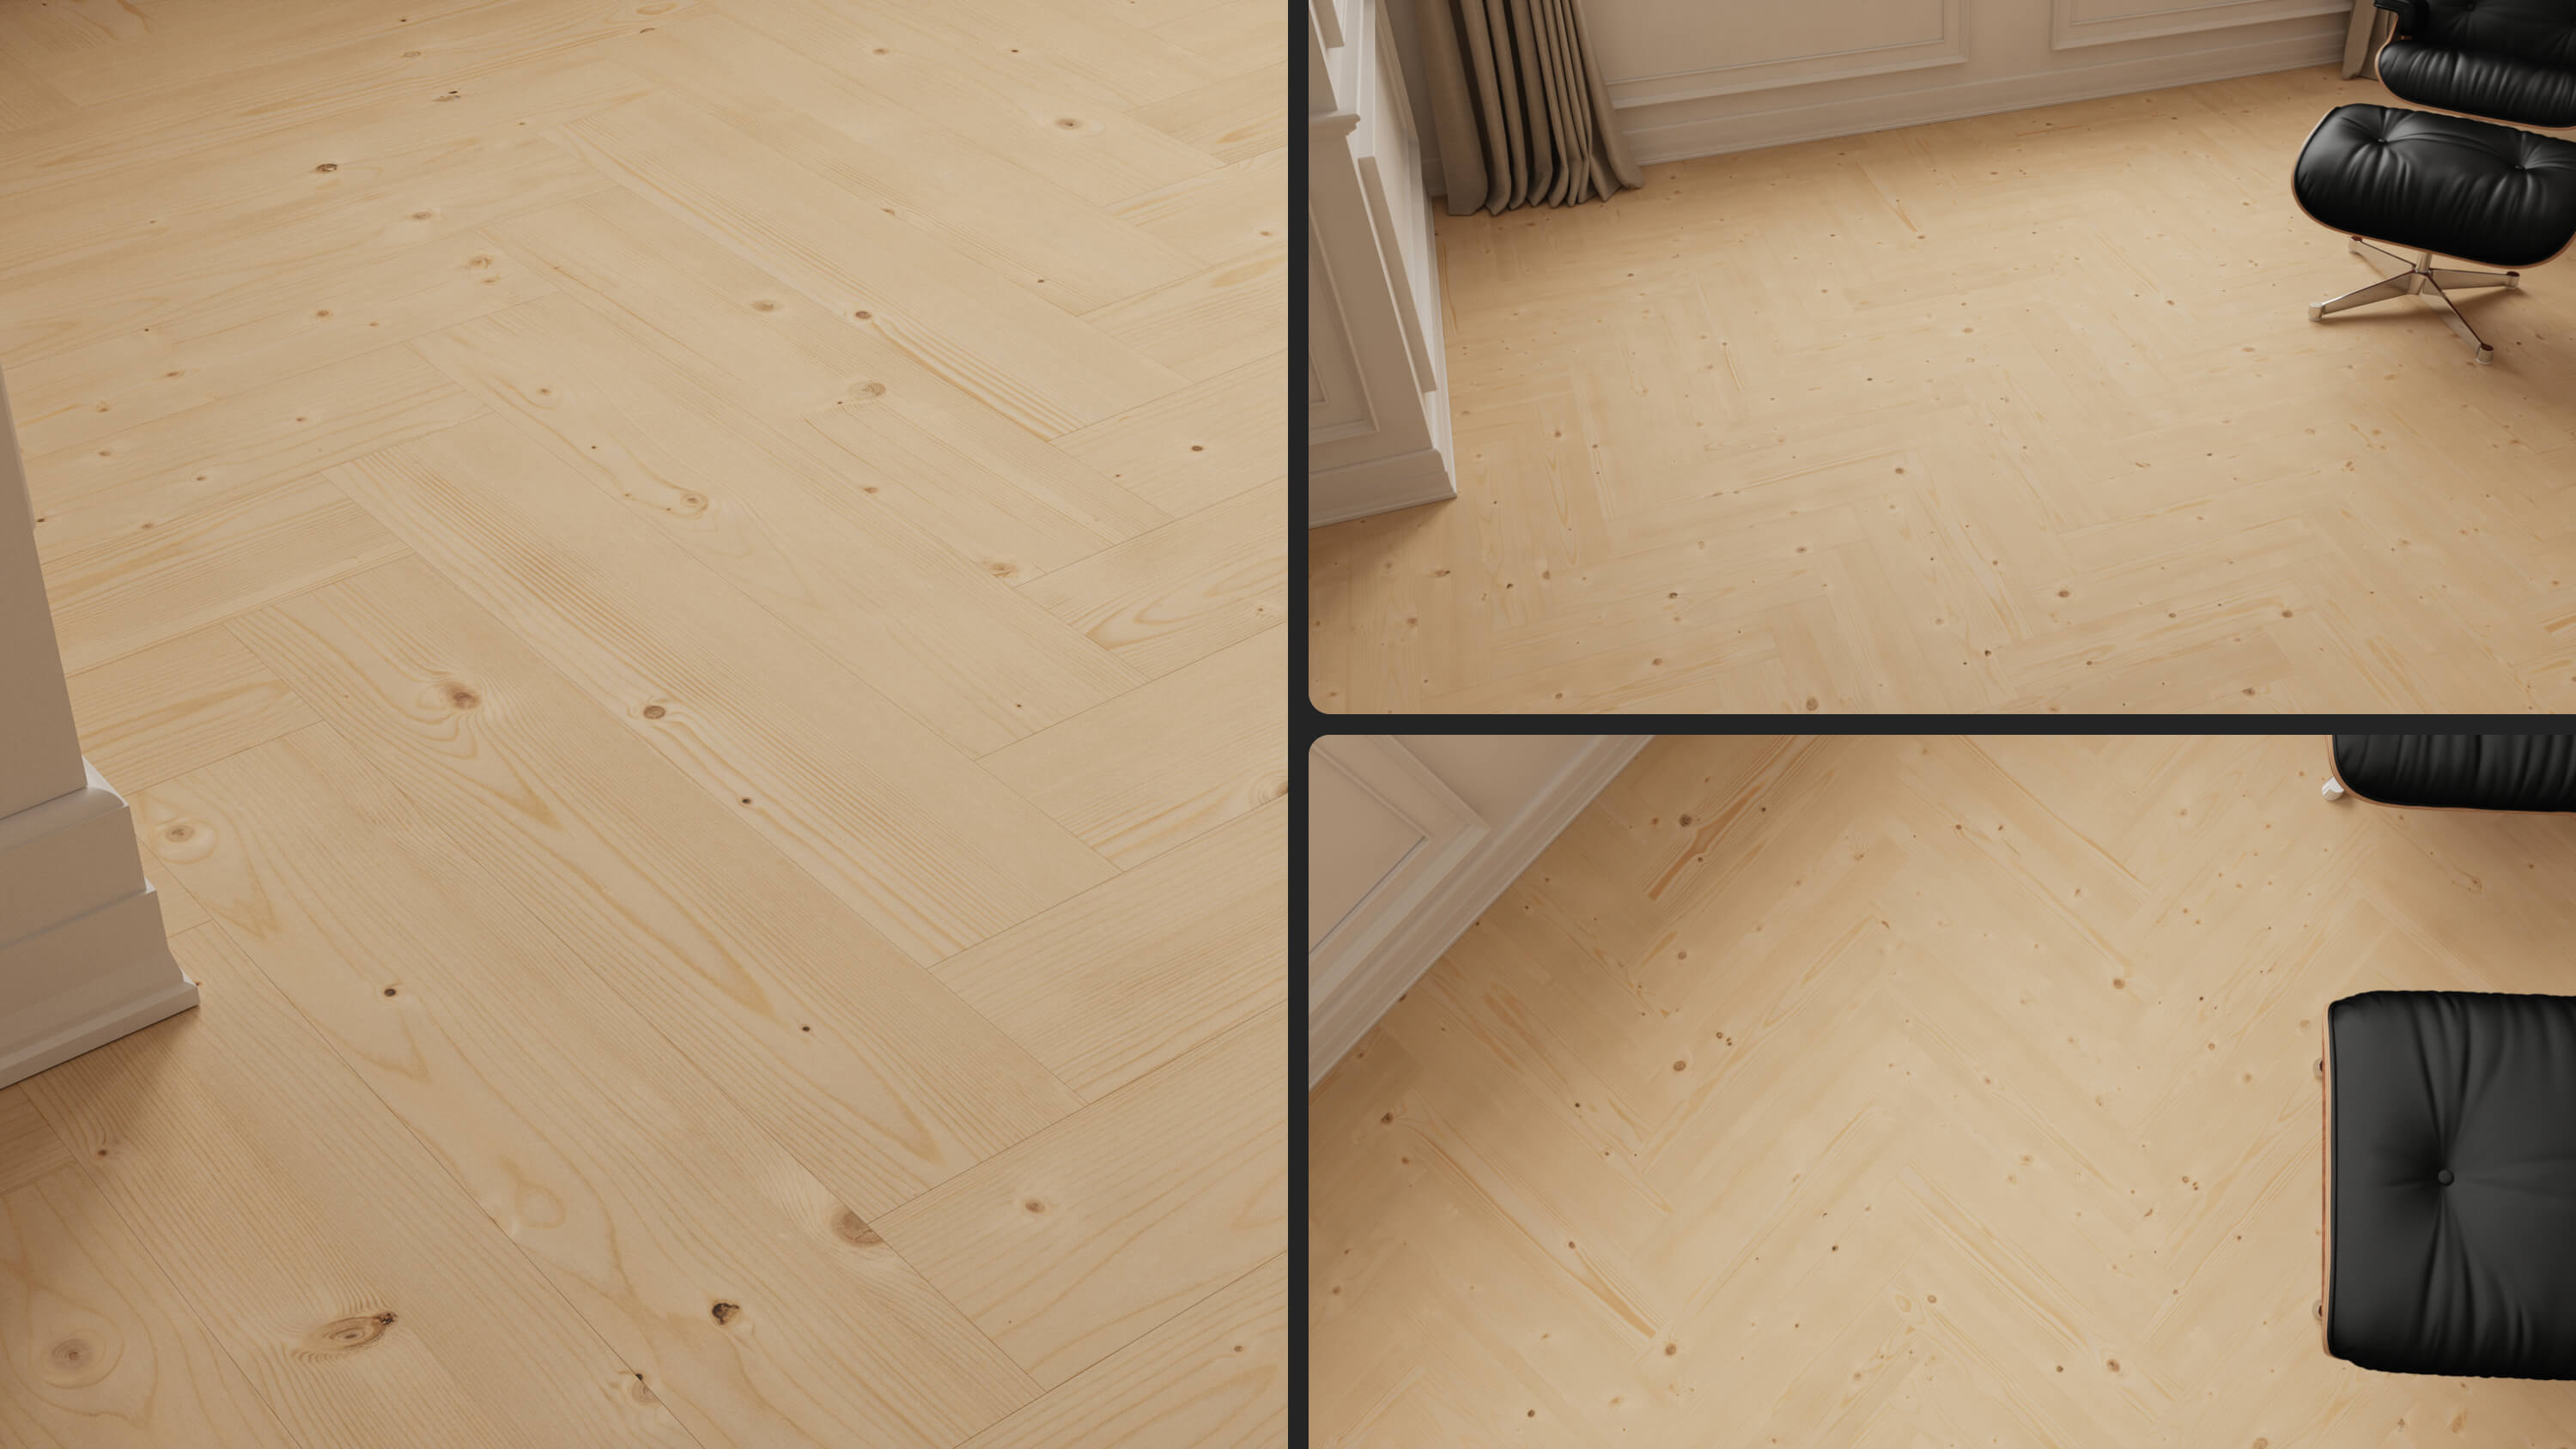 seamless wooden floor texture